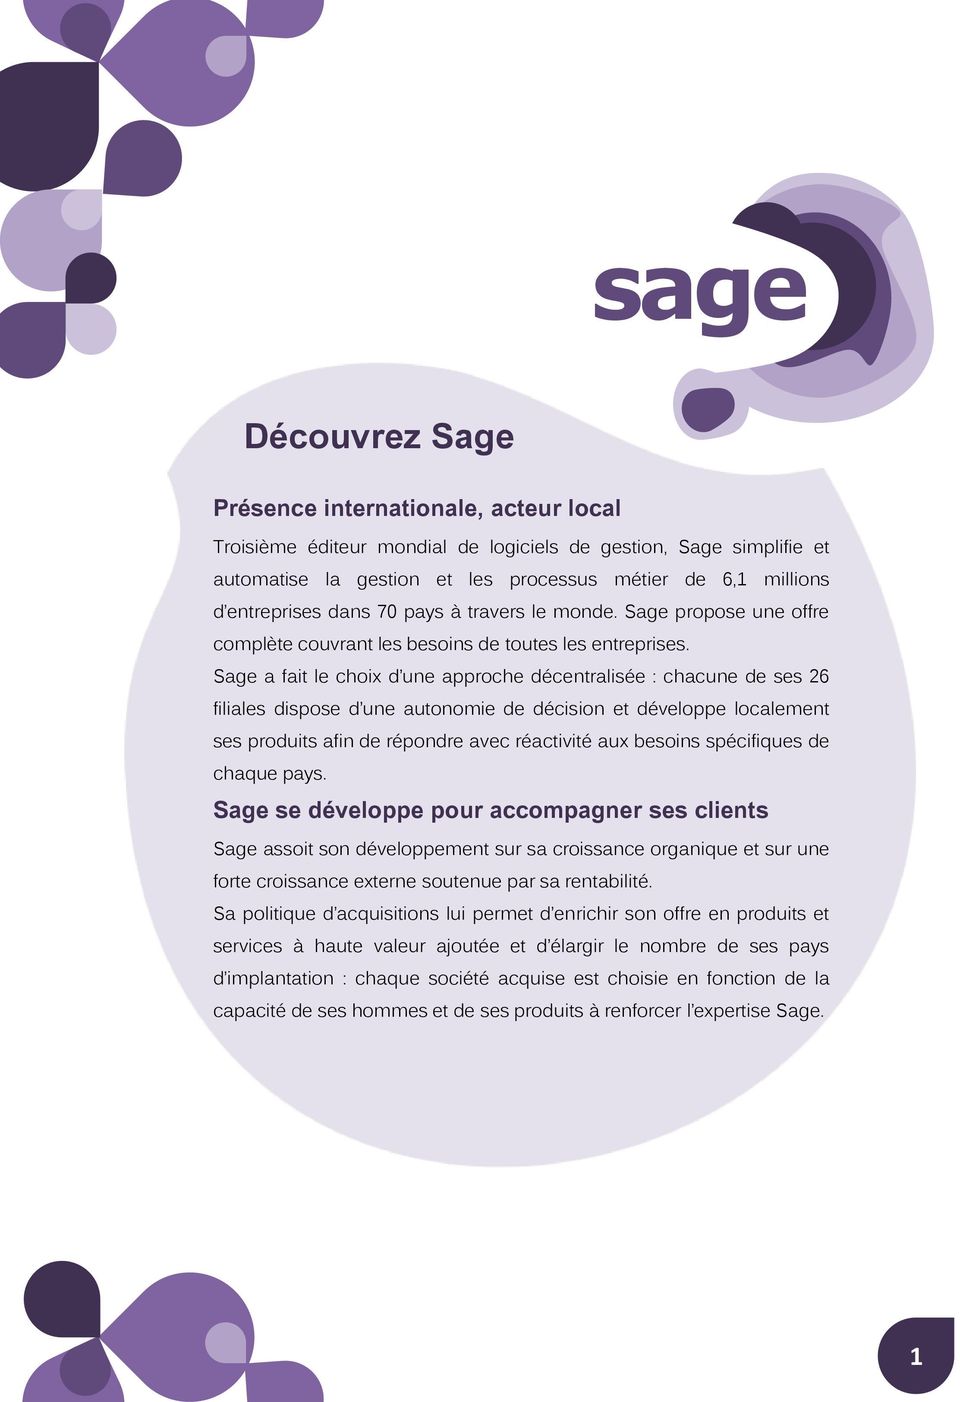 Sage a fait le choix d une approche décentralisée : chacune de ses 26 filiales dispose d une autonomie de décision et développe localement ses produits afin de répondre avec réactivité aux besoins